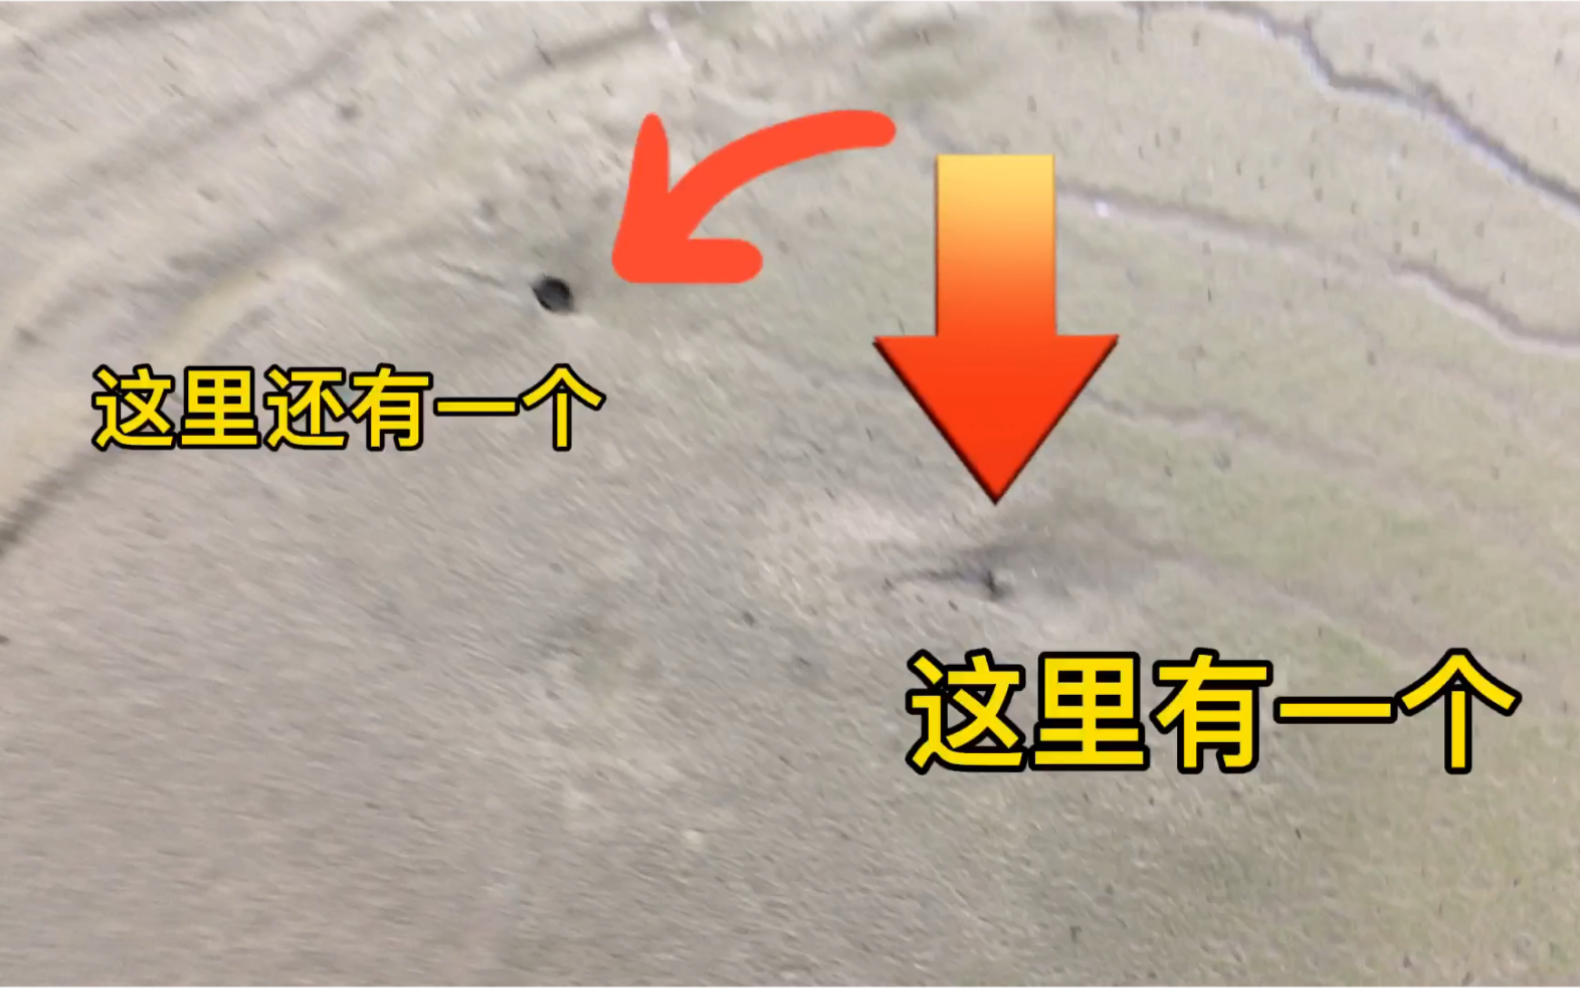 甲鱼走过的痕迹图片图片